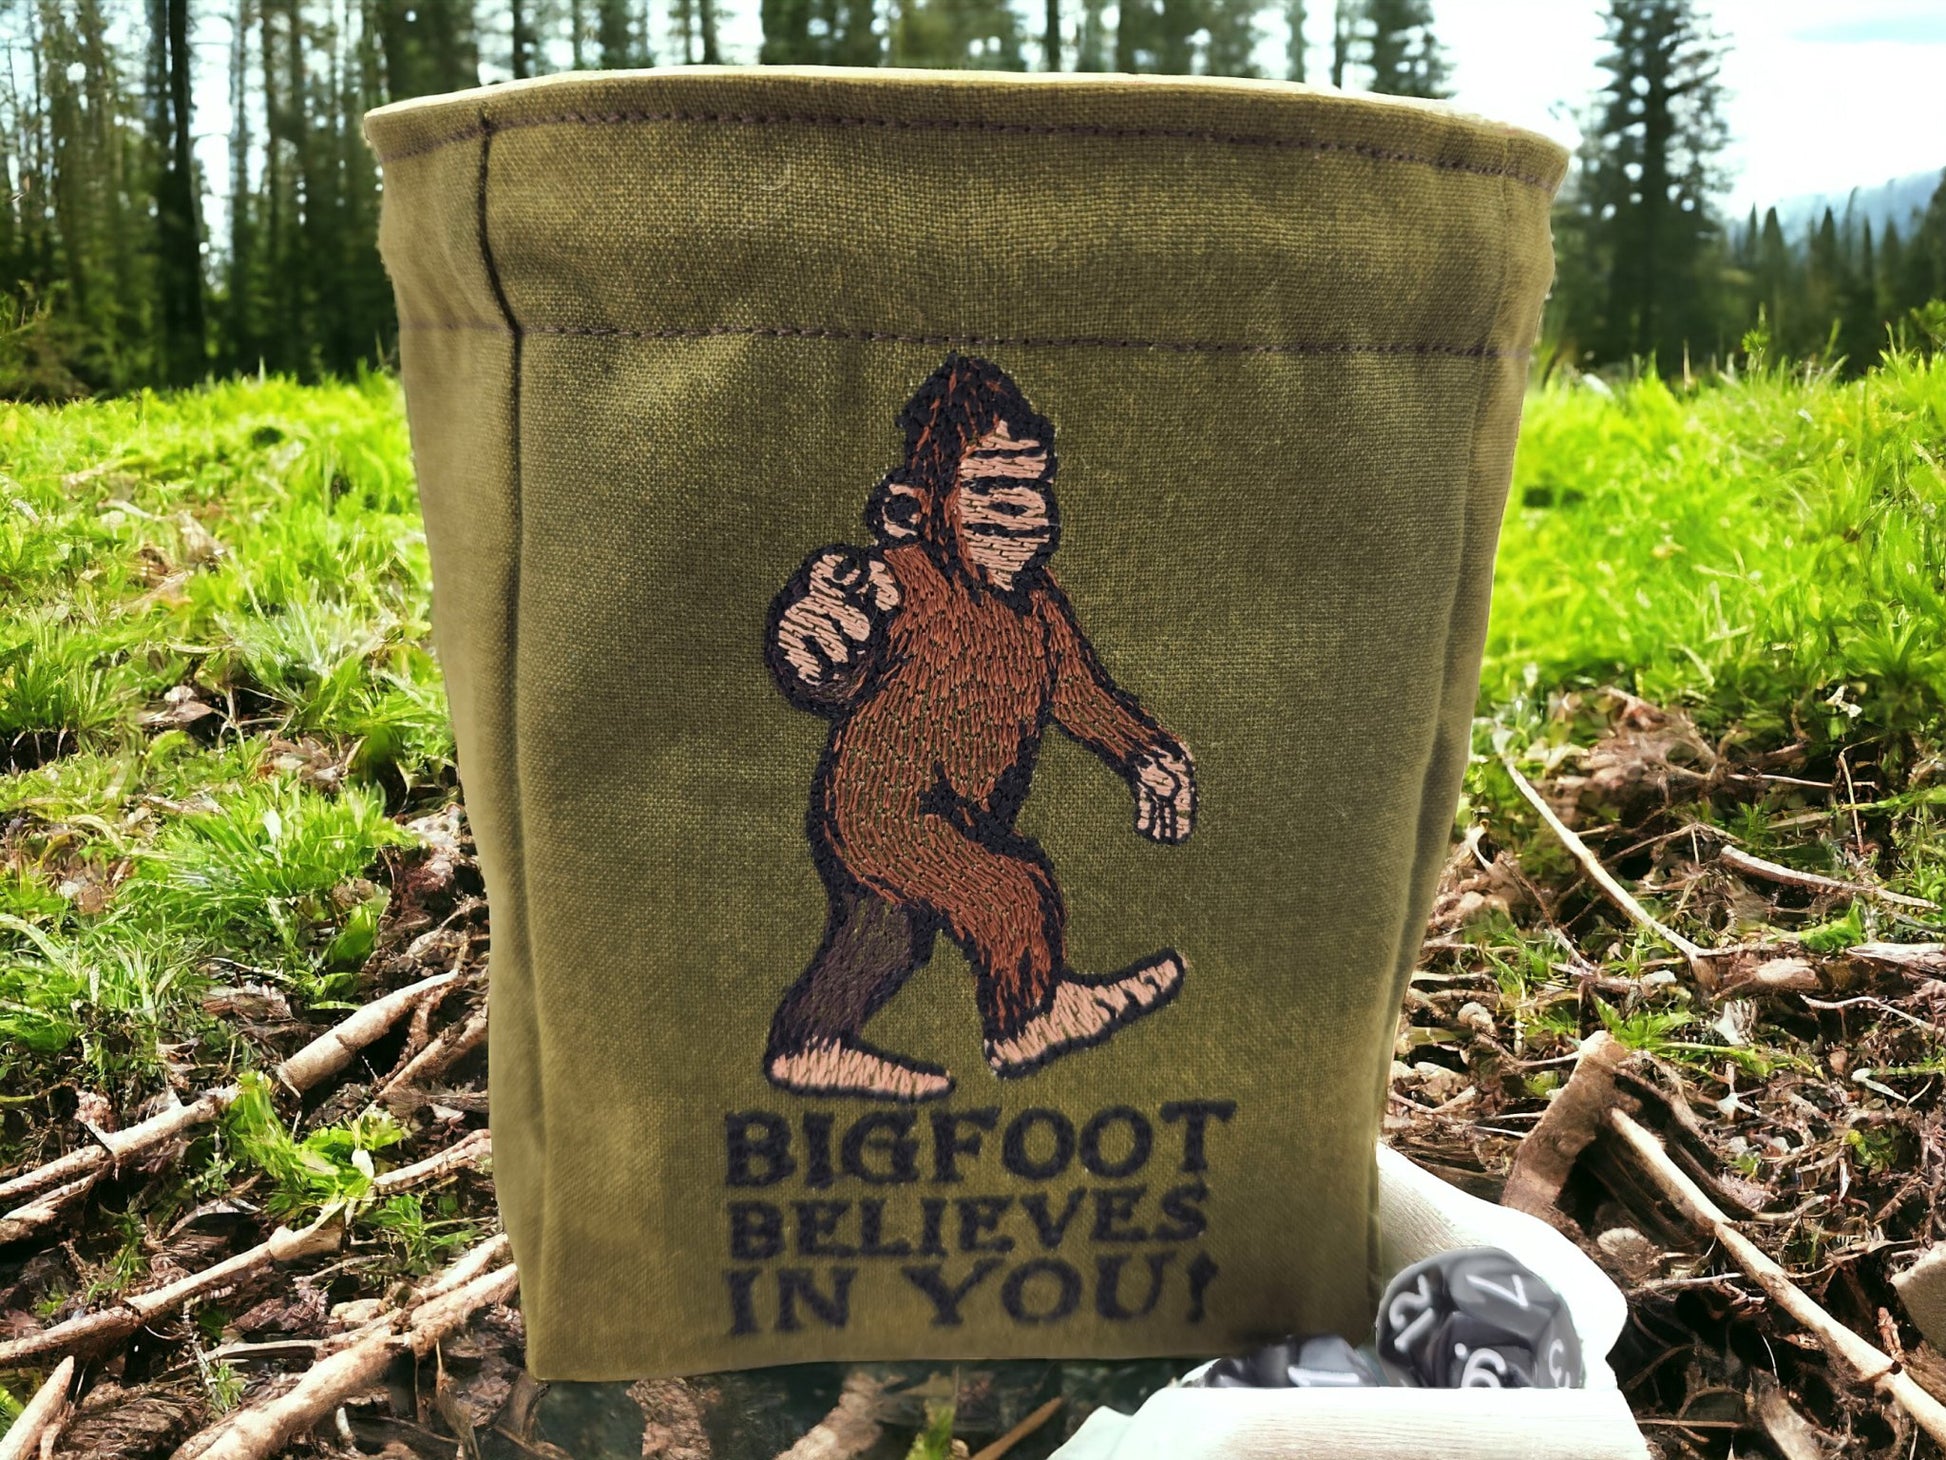 Bigfoot believes in you, dice bag - Rowan Gate